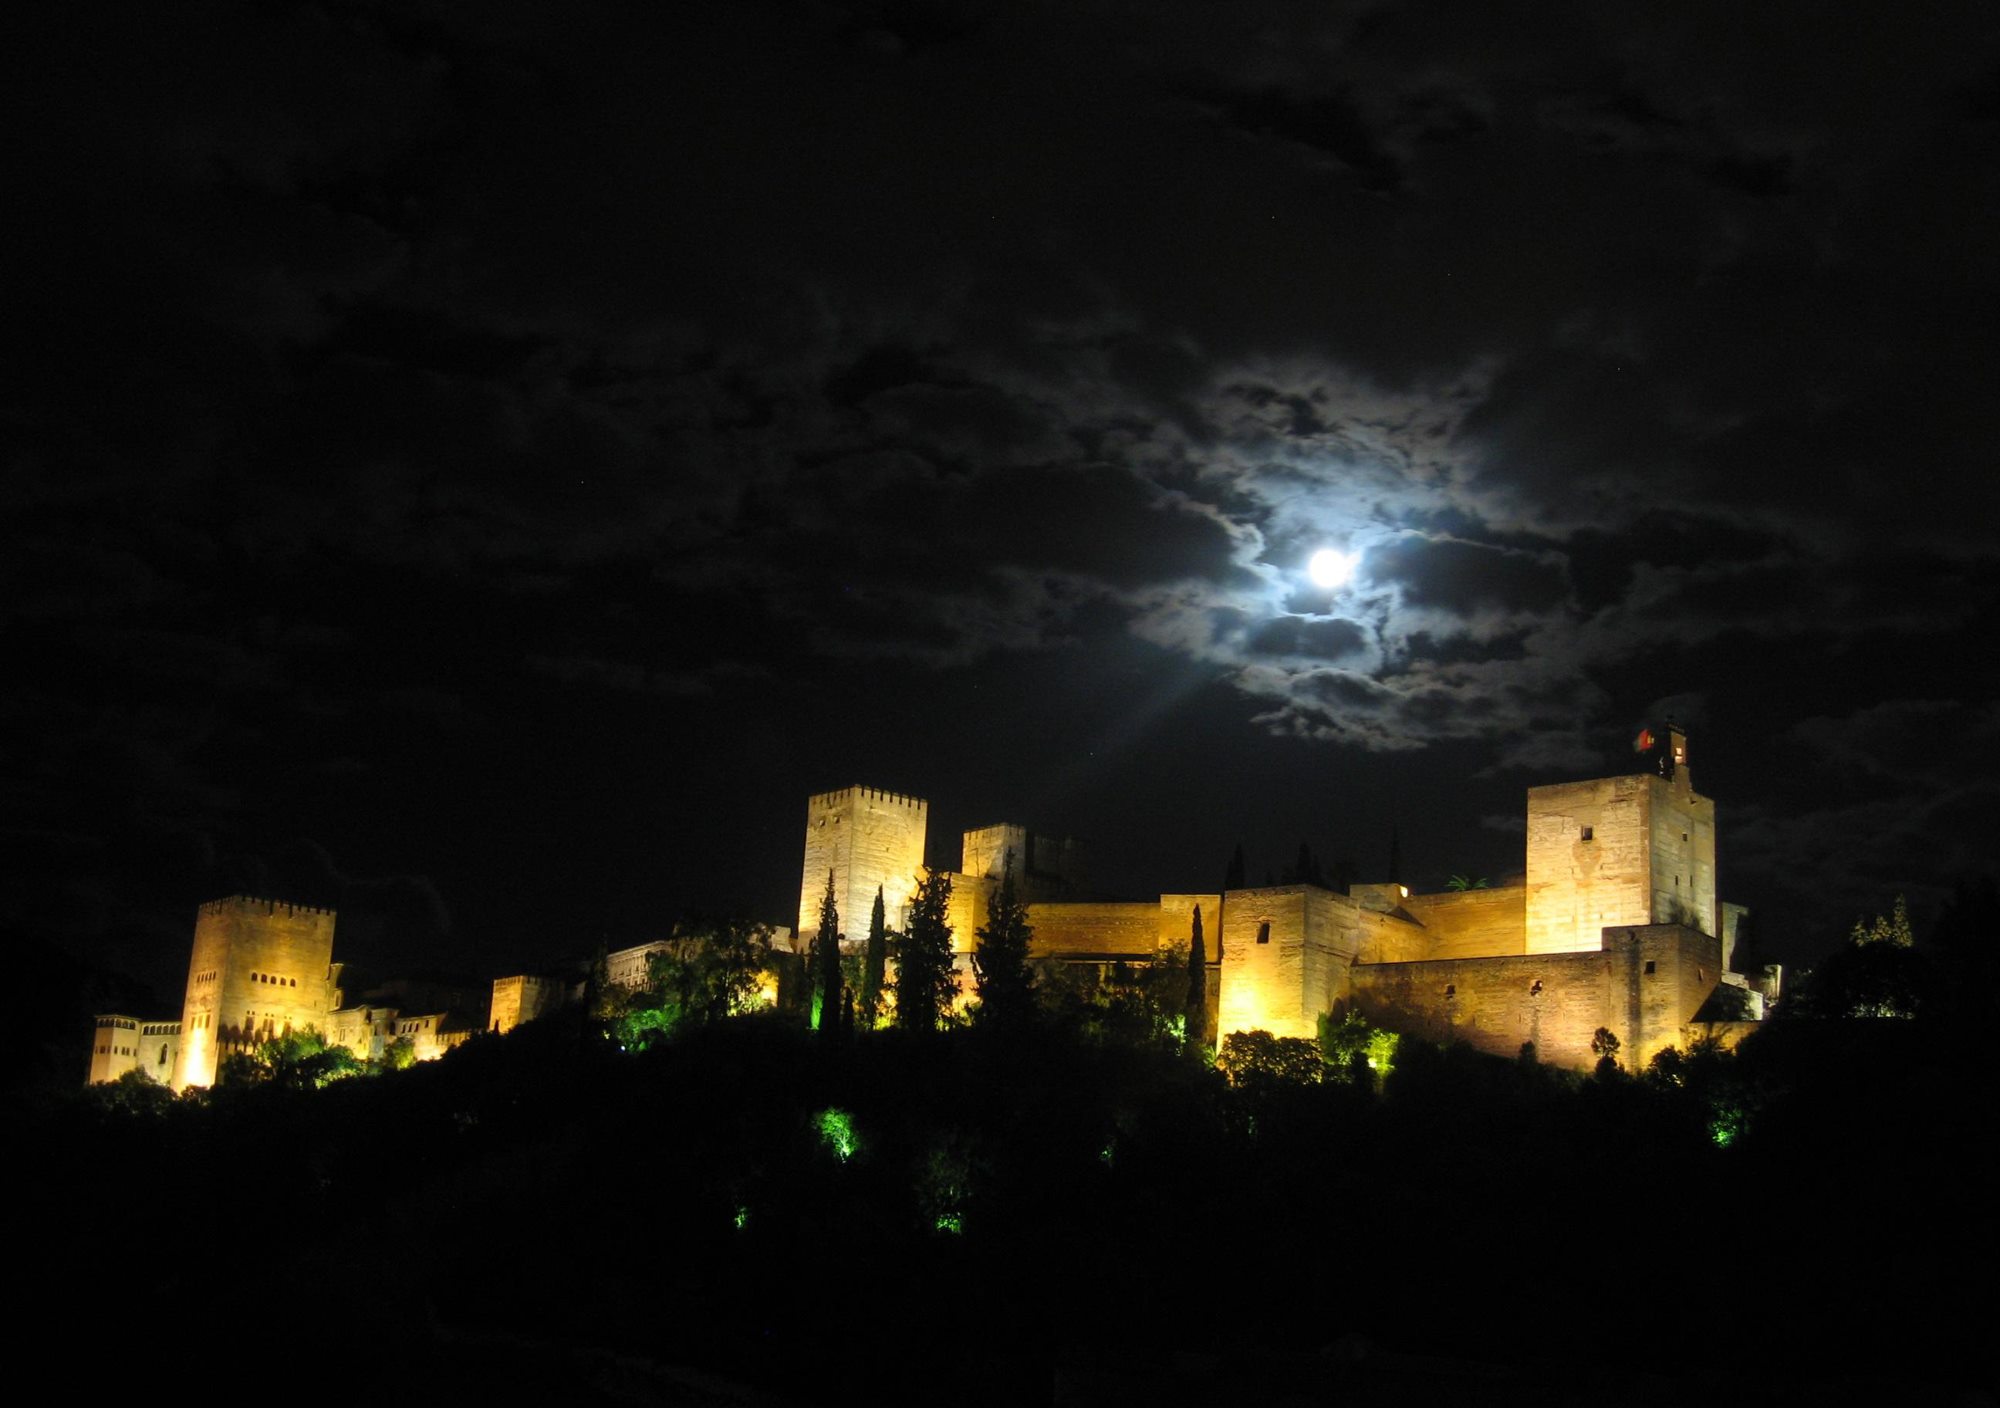 Visita guiada tour guiado noche nocturna en la Alhambra Palacios Nazaríes patio de los leones